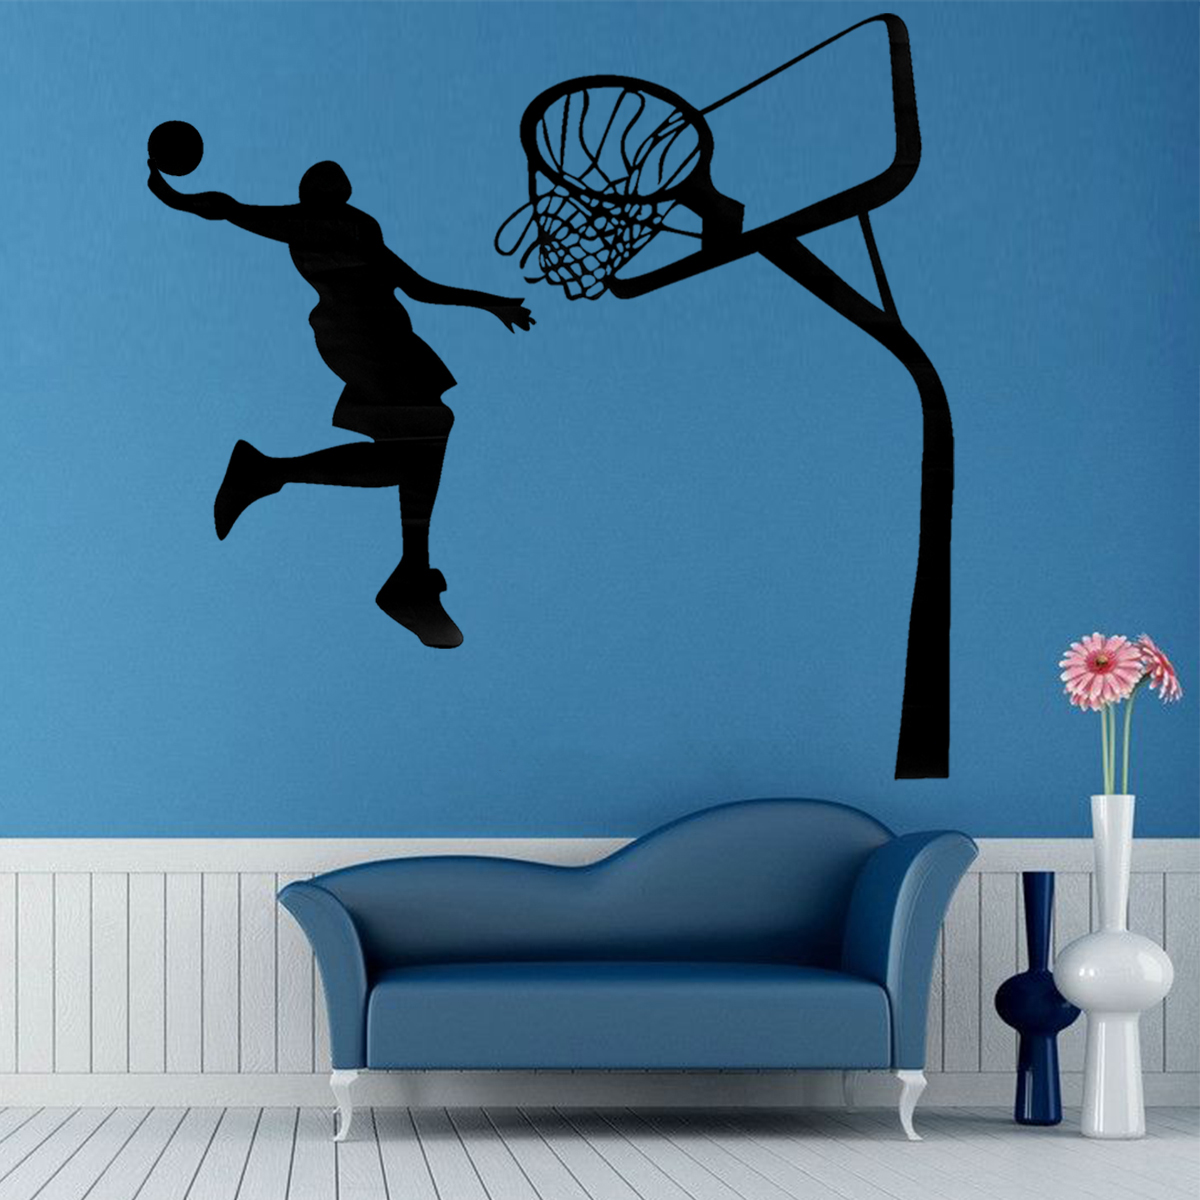 

Съемный Баскетбол Данк Спорт DIY Стикер Стены Детская Комната Искусство Декора Наклейки